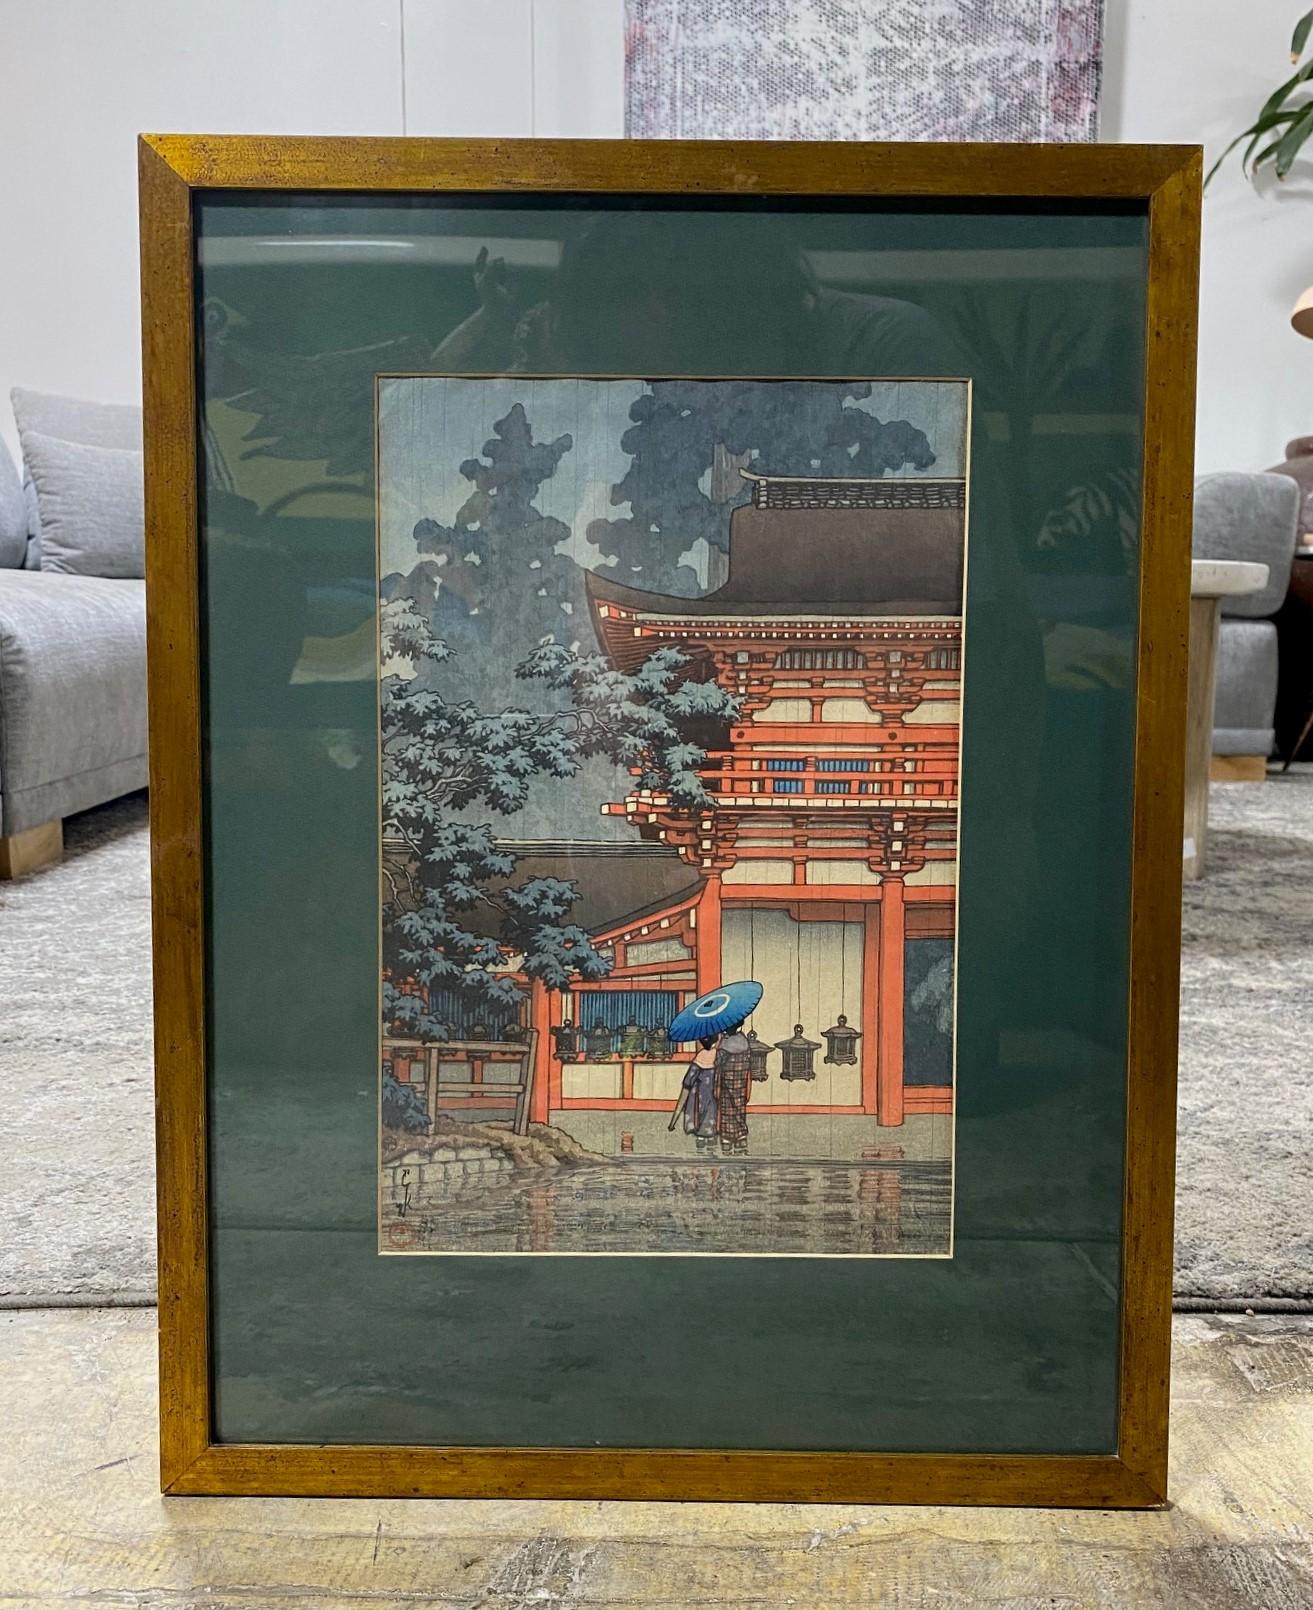 Une magnifique gravure sur bois de format oban, richement colorée, réalisée par le célèbre artiste japonais Kawase Hasui. Cette estampe est intitulée 